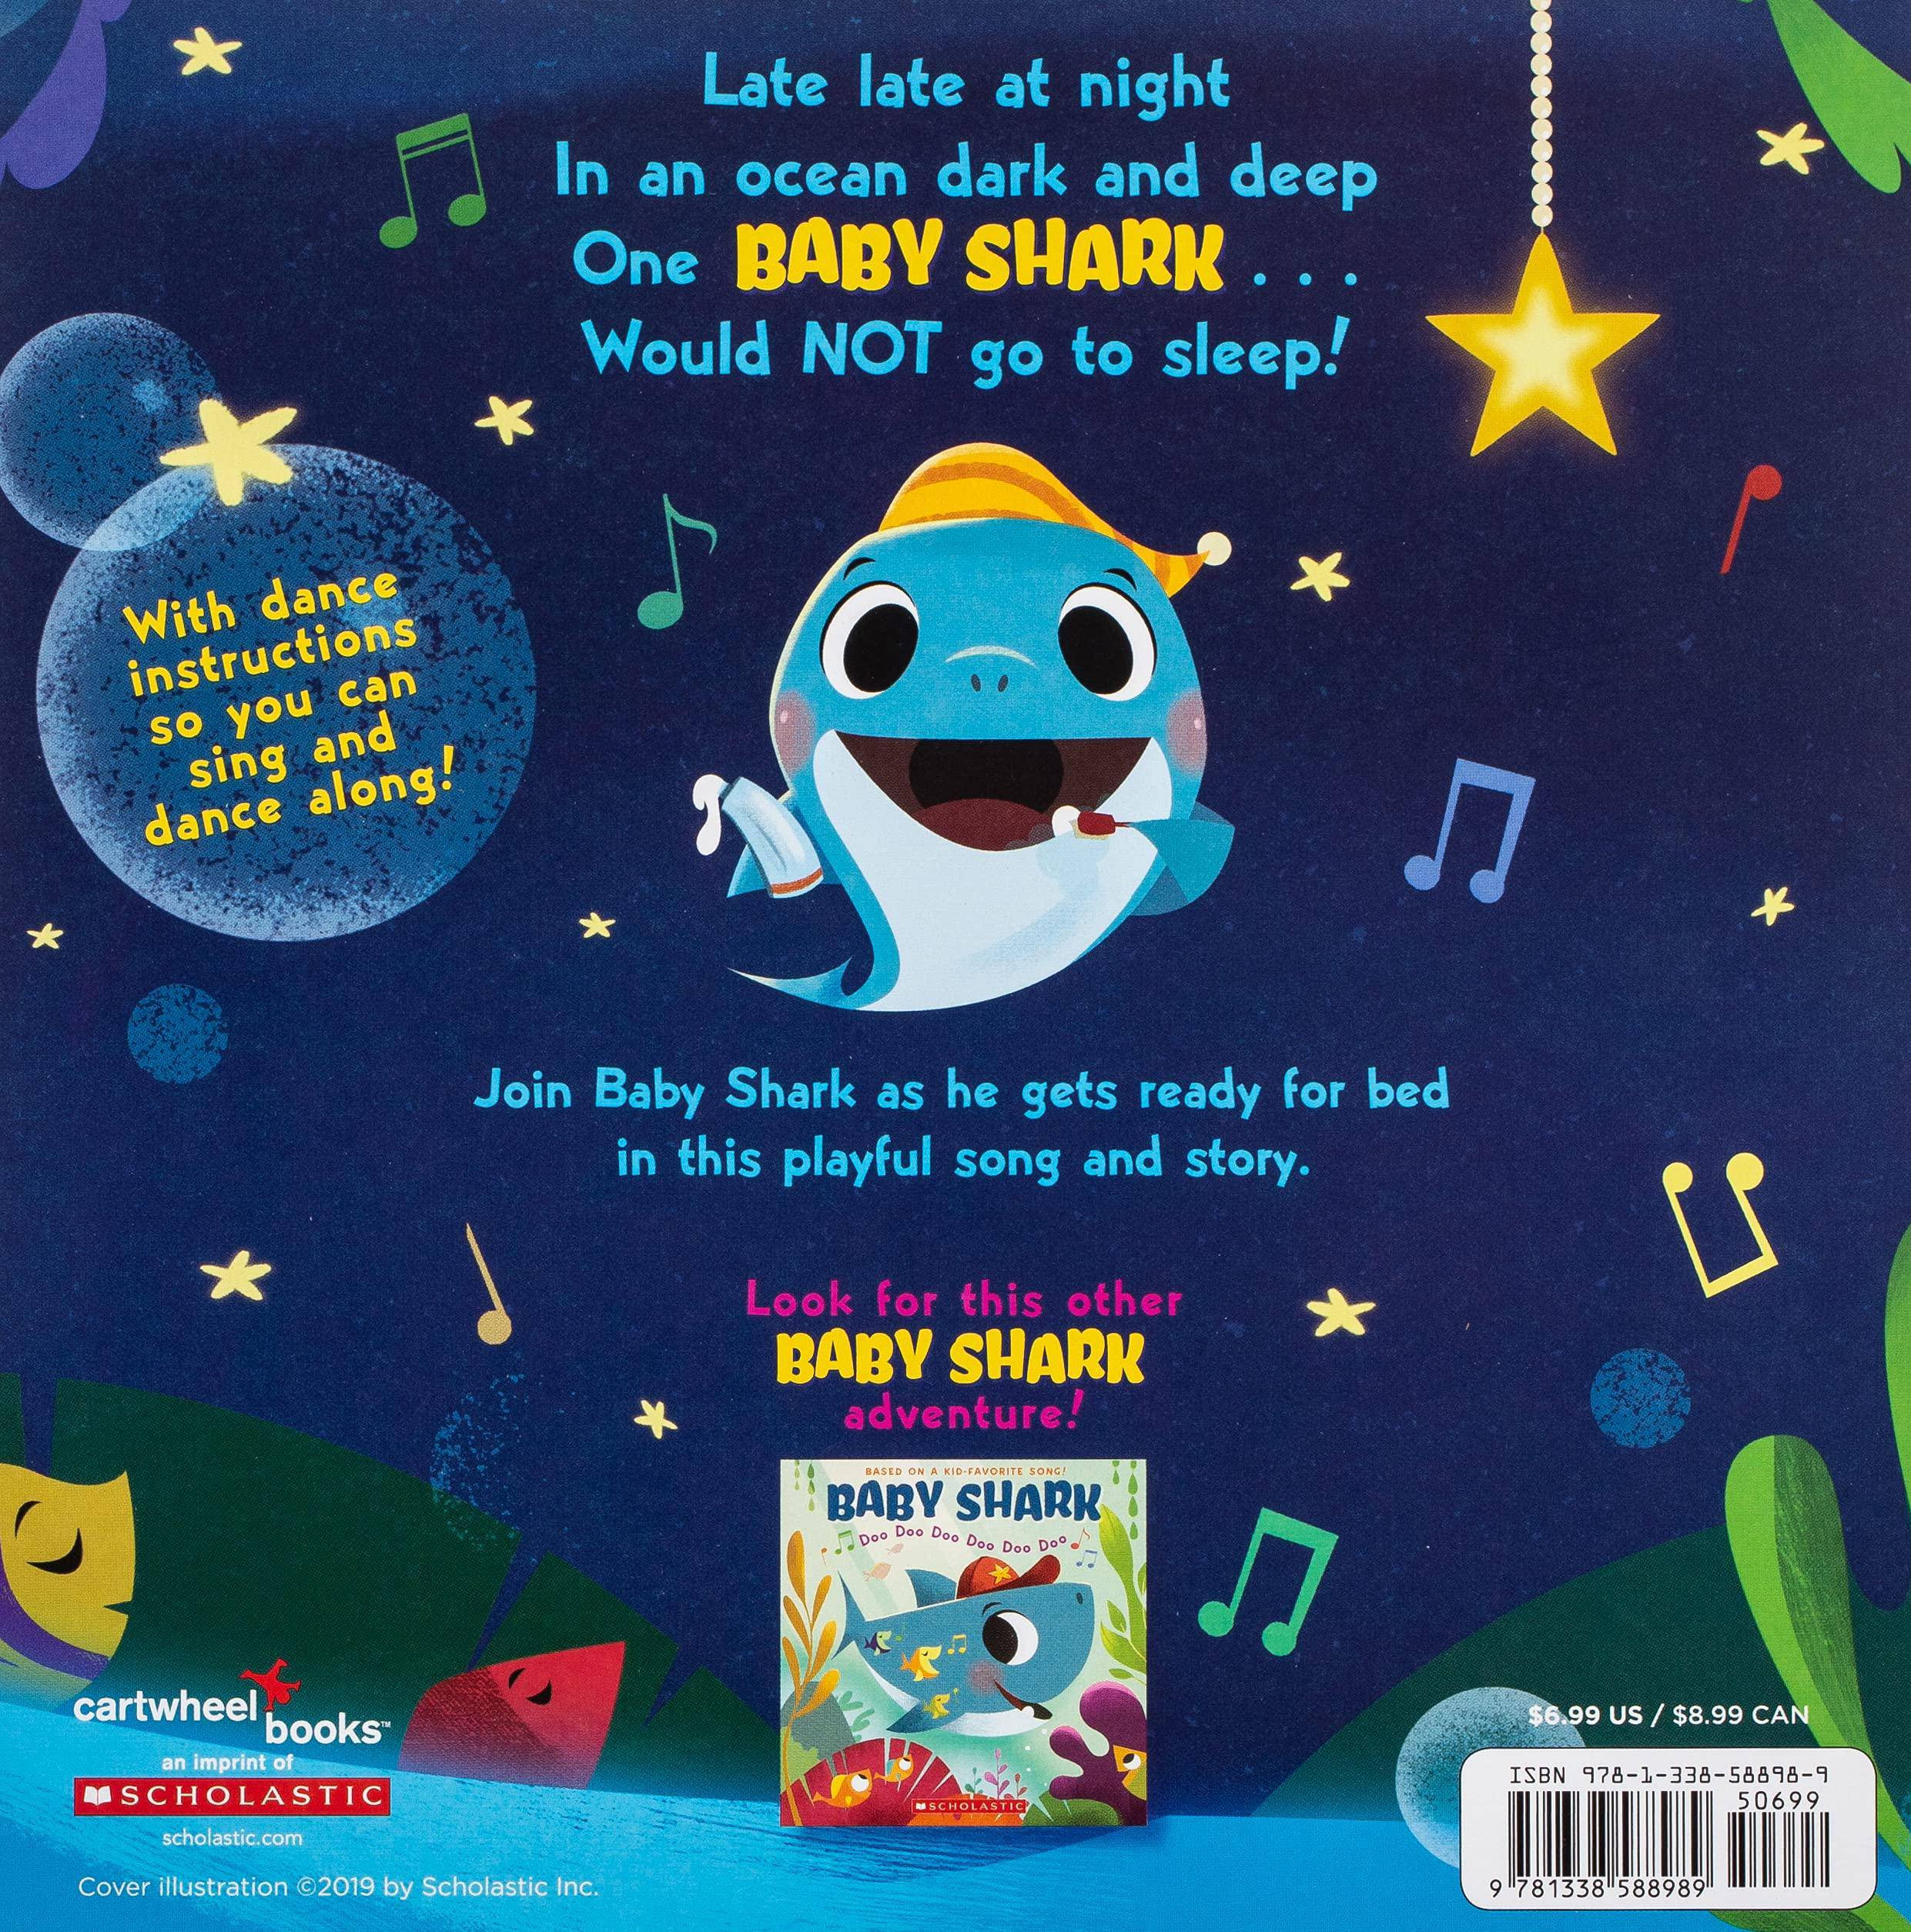 Bedtime for Baby Shark: Doo Doo Doo Doo Doo Doo - SureShot Books Publishing LLC